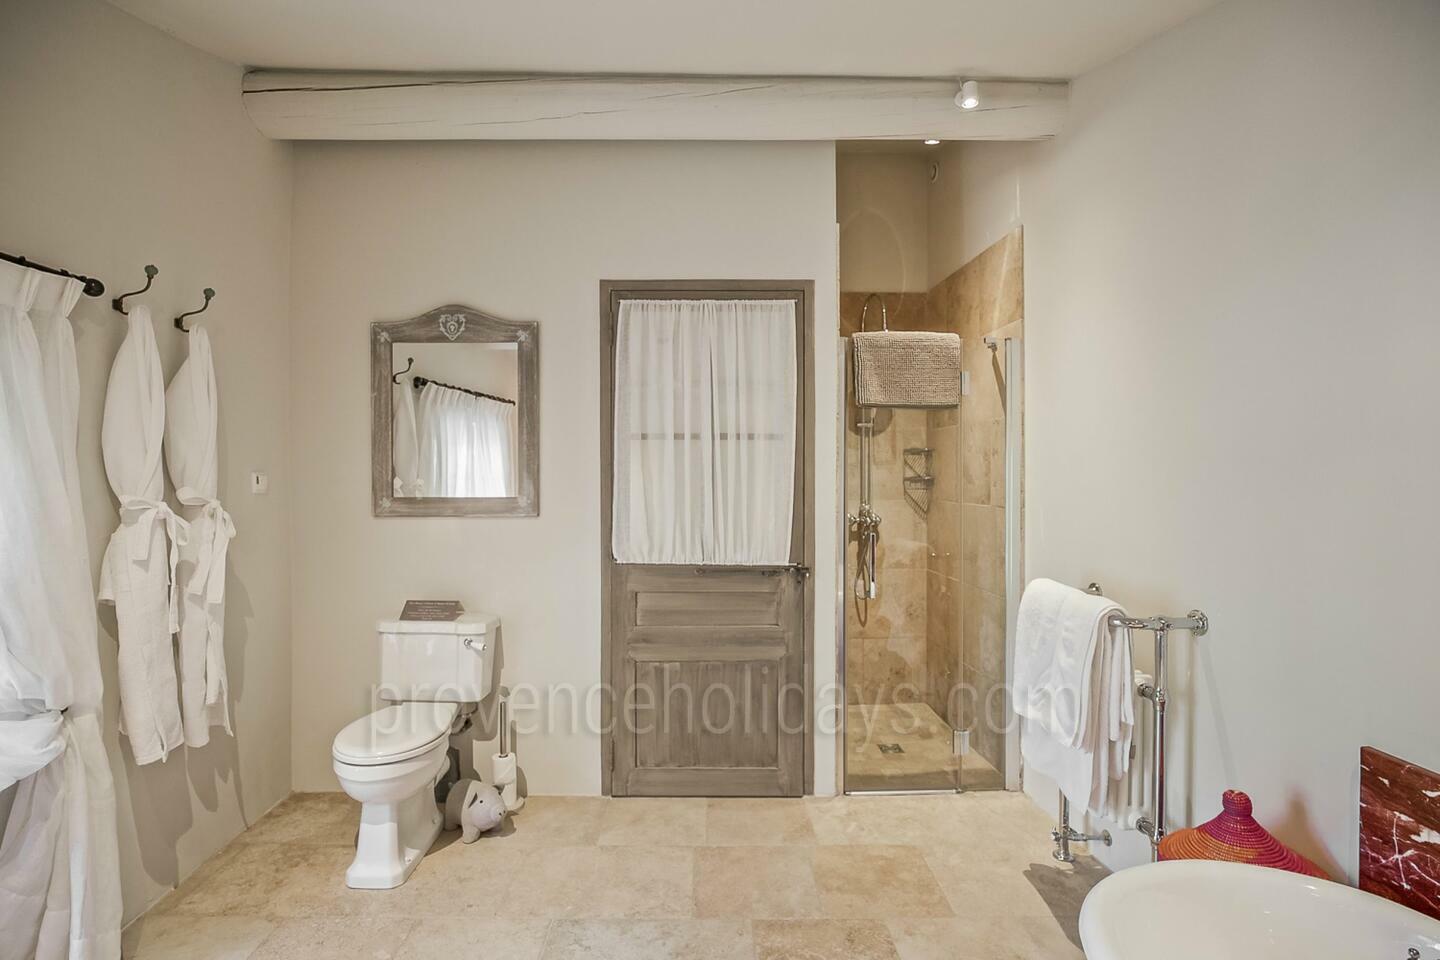 50 - Chez Emile: Villa: Bathroom